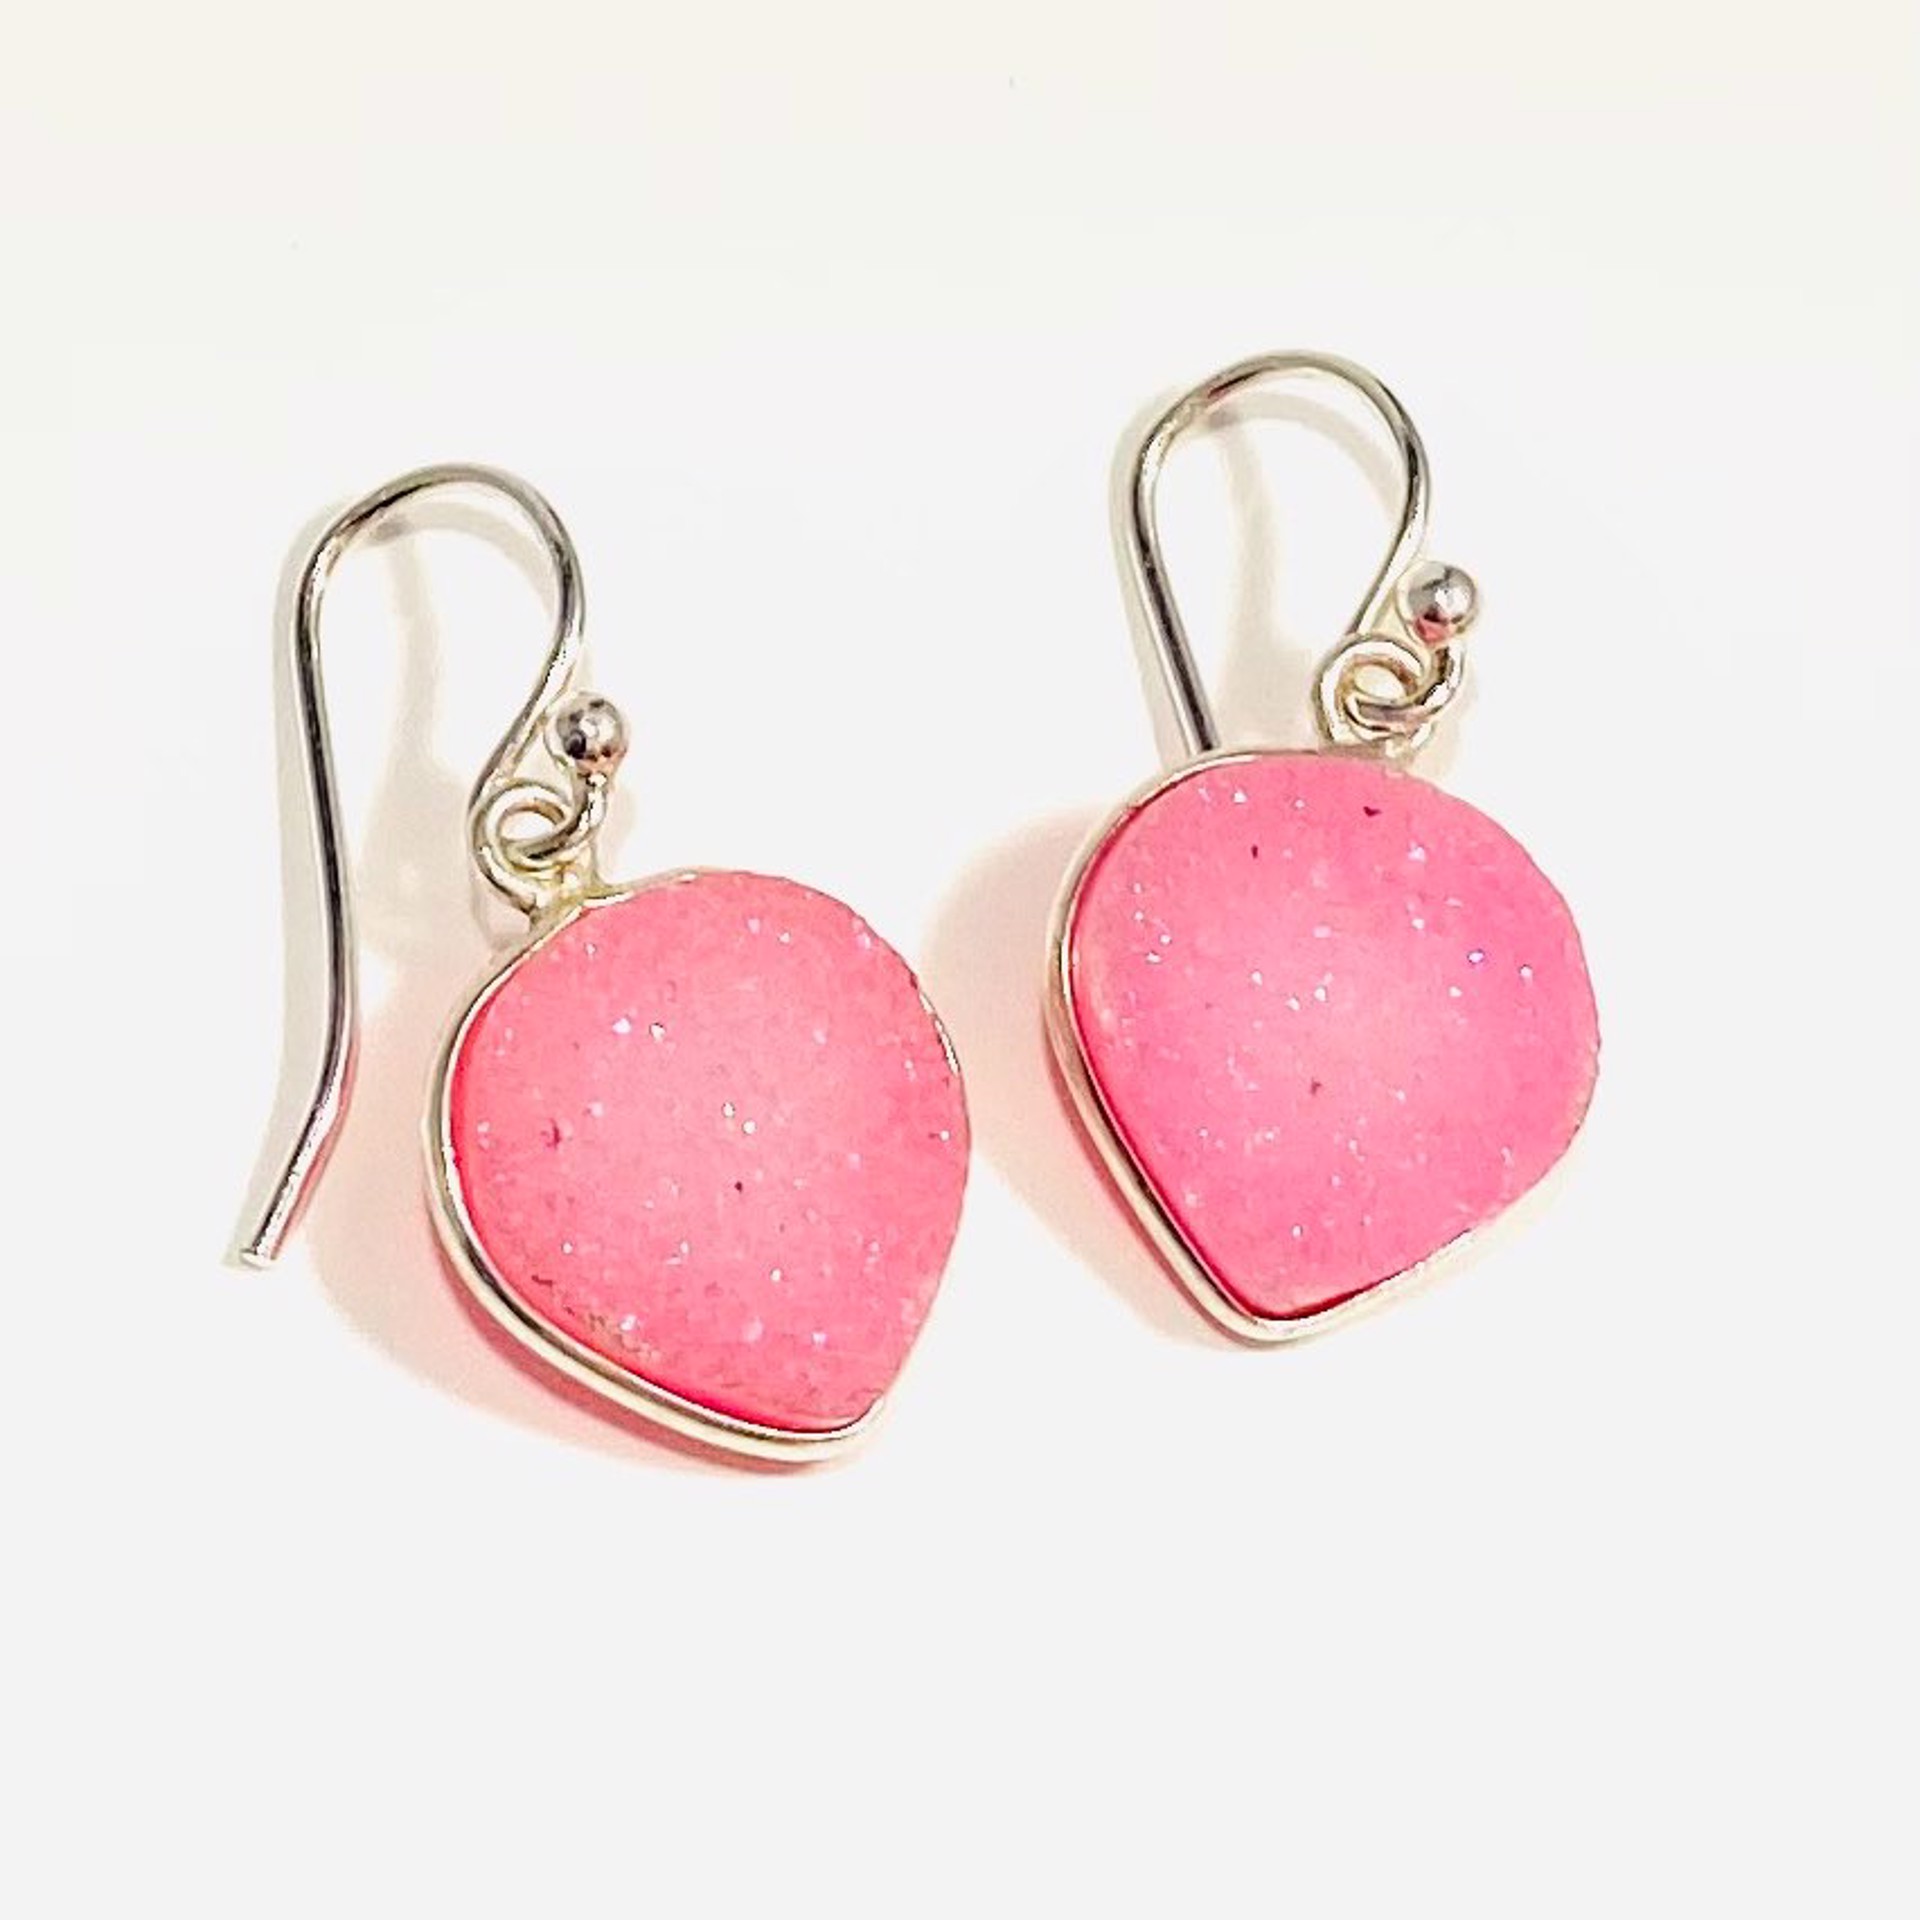 Heart Shaped Hot Pink Druzy Earring by Nance Trueworthy